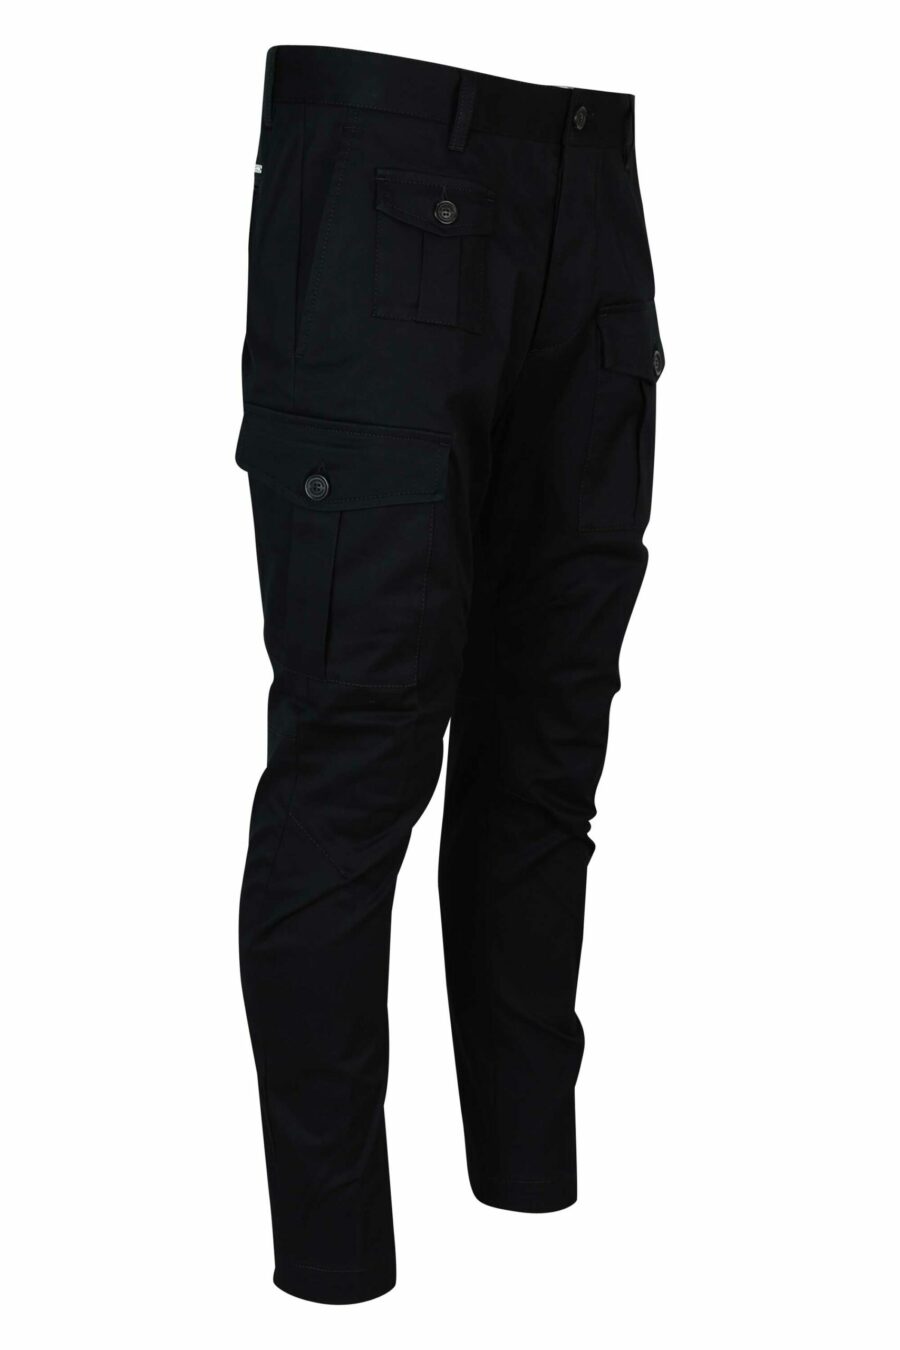 Pantalón negro estilo cargo "sexy cargo" - 8054148389000 1 scaled